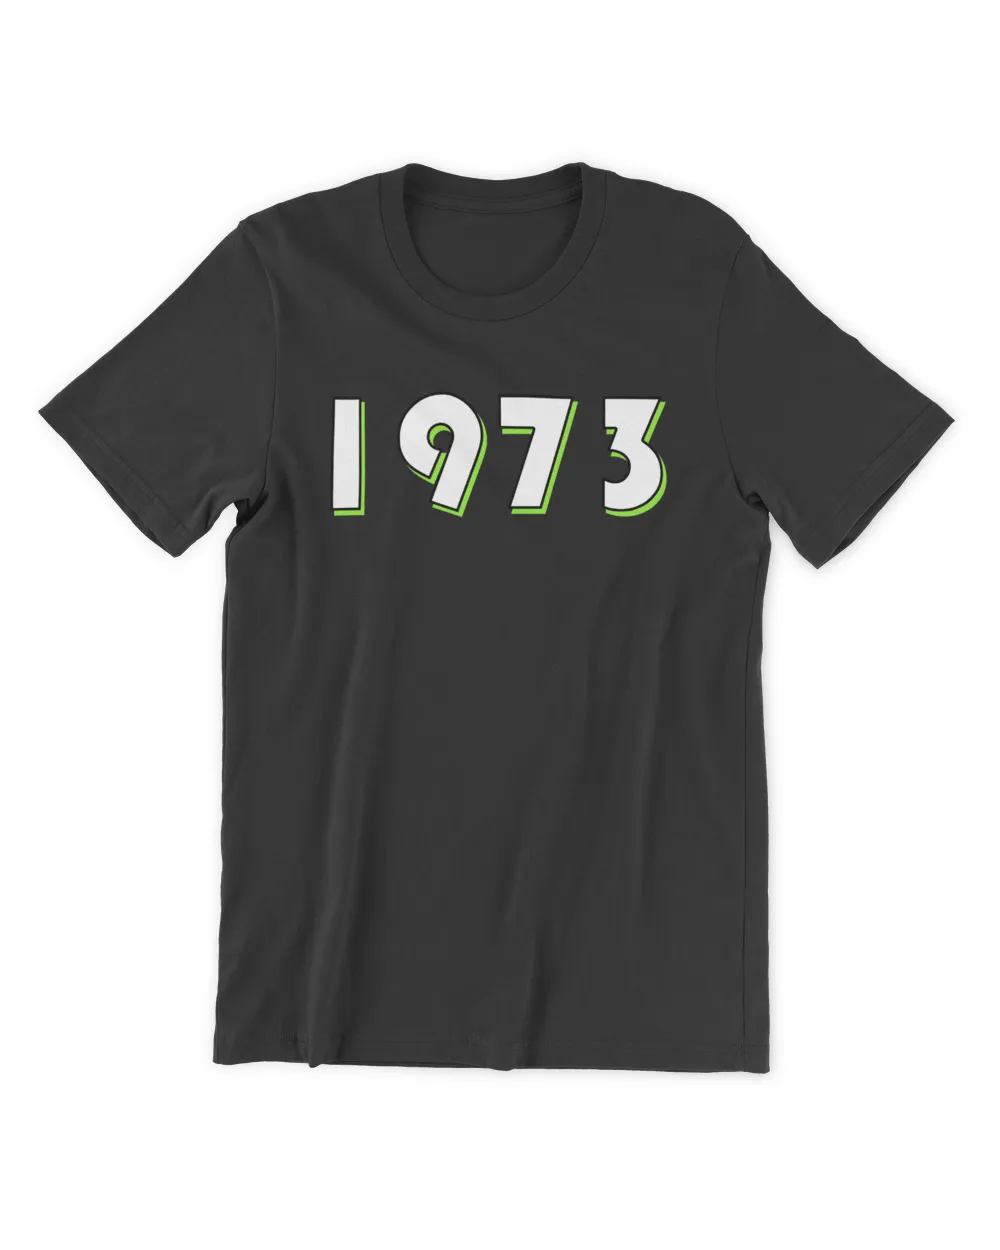 1973 Tee SNL , SNL 1973 T Shirt , SNL 1973 Shirt , Saturday Night Live - SNL 1973